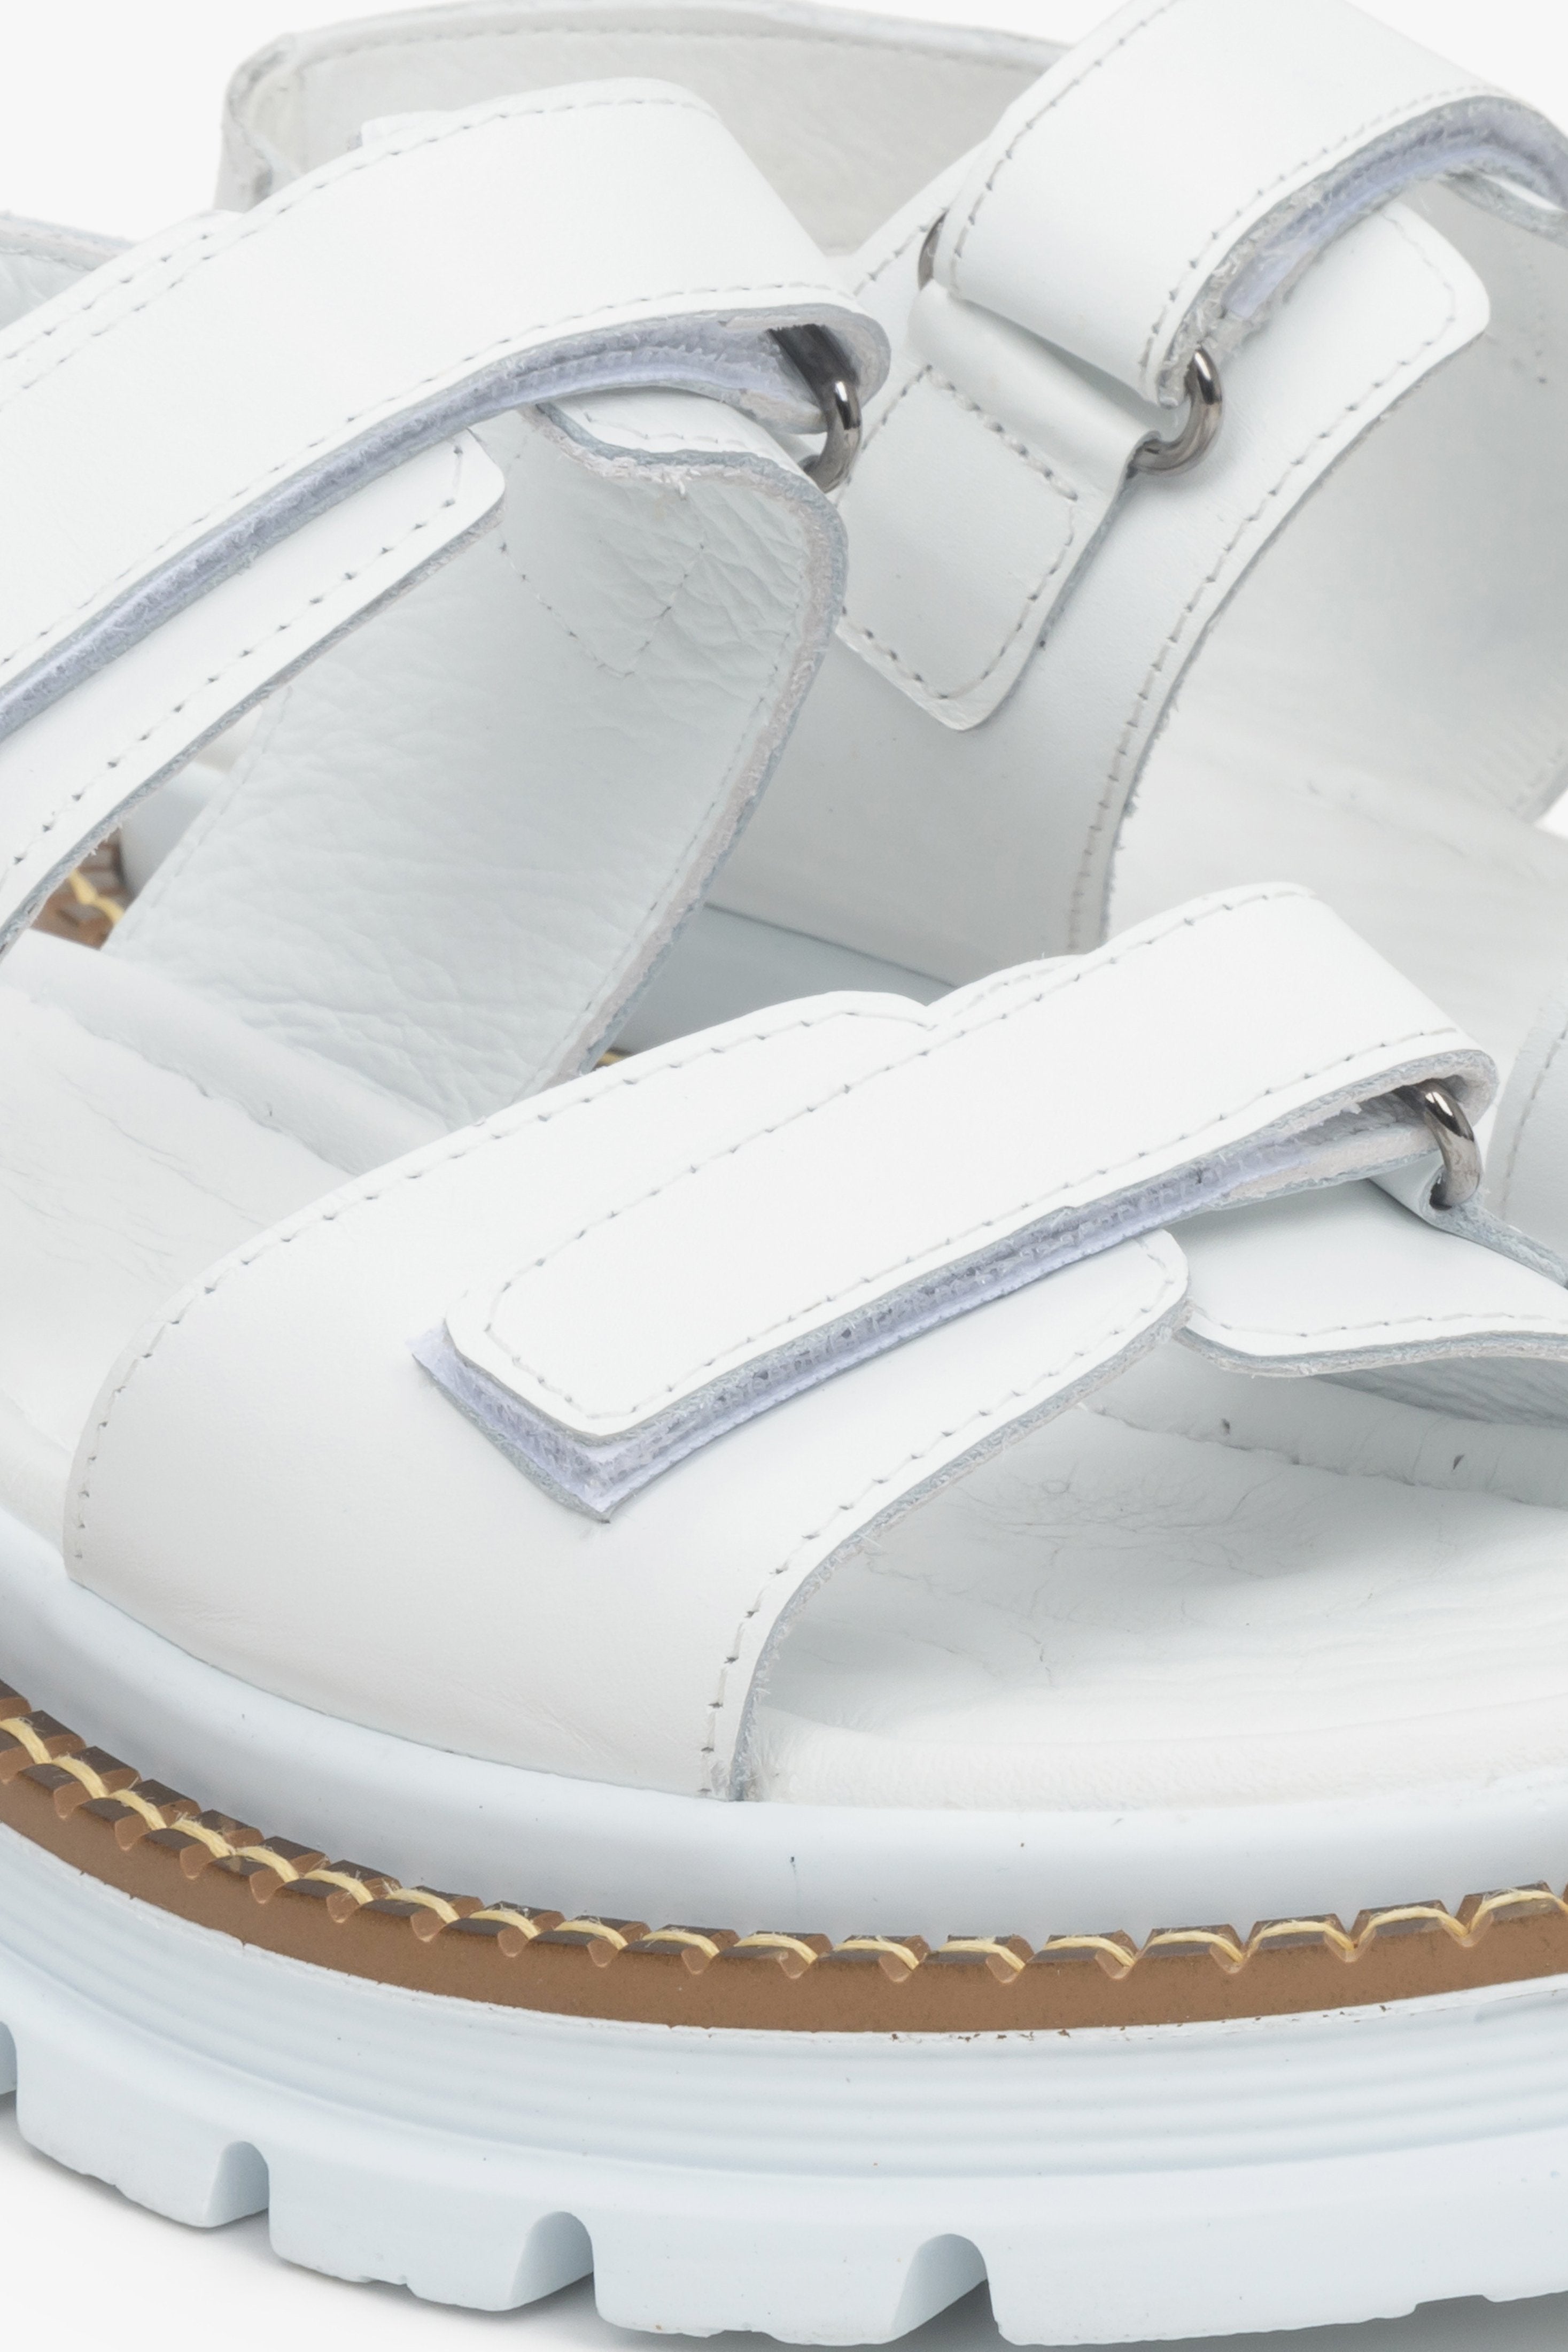 Białe, damskie sandały Estro z naturalnej skóry licowej na elastycznej platformie - zbliżenie na system zapięć i wzmocnień.